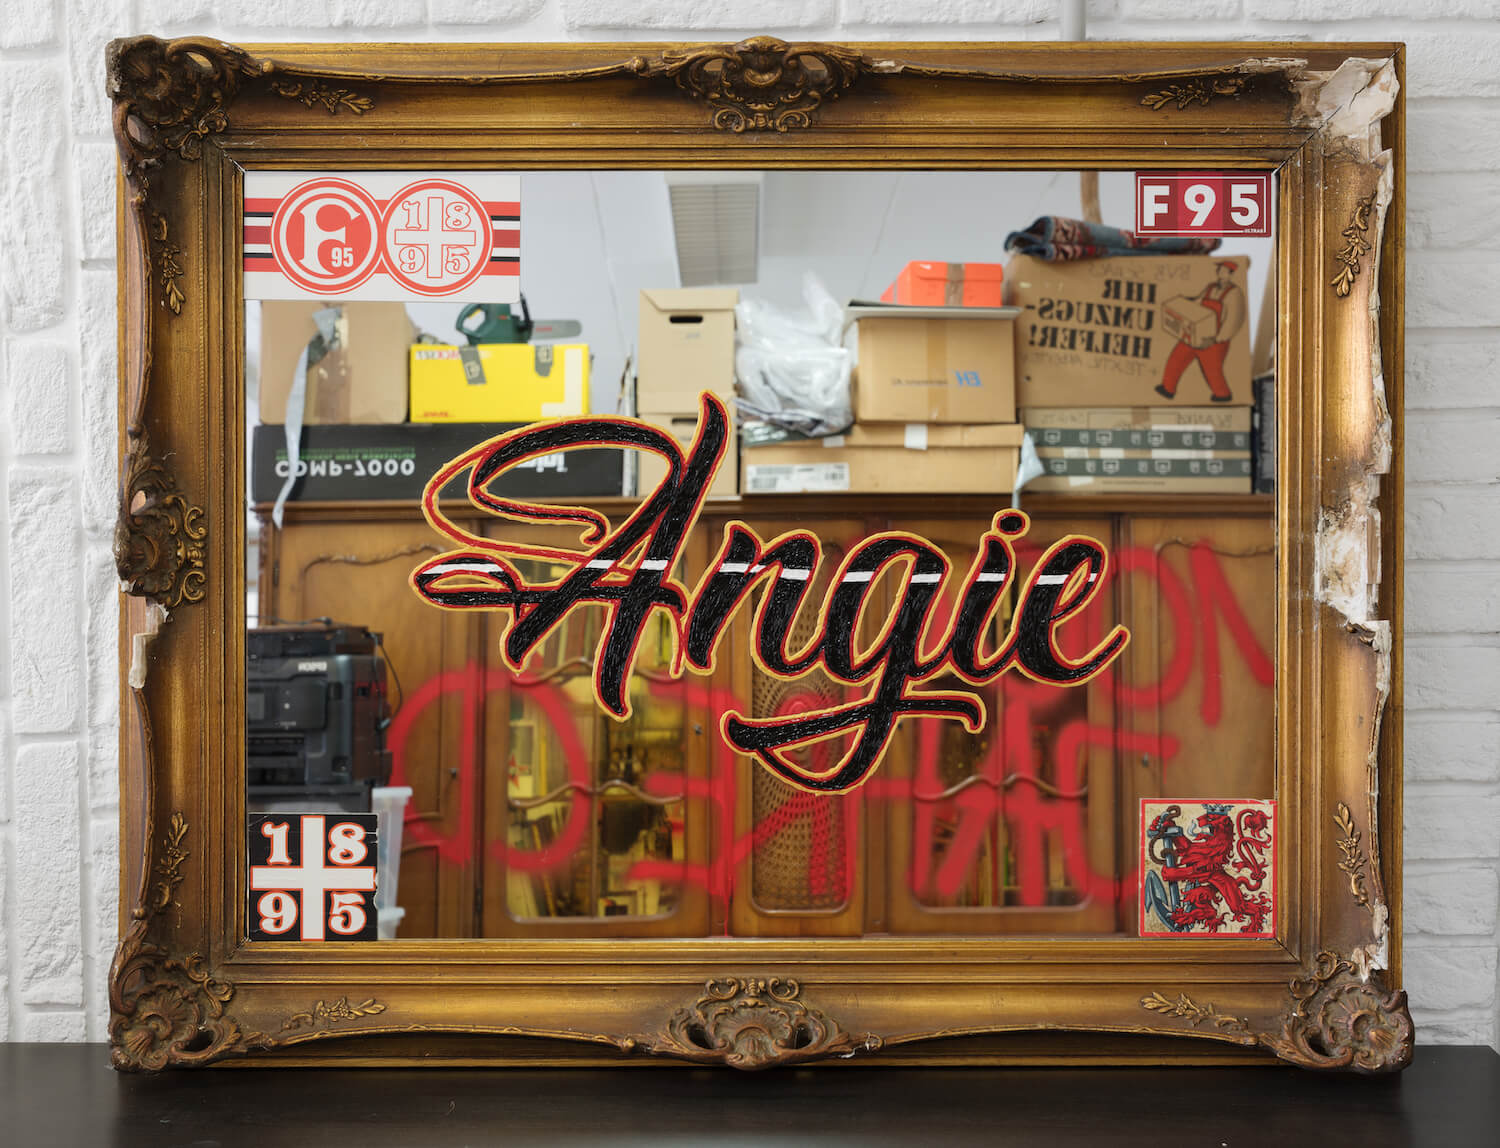 Ein kitschig gerahmter Spiegel mit verschiedenen Augklebern. In der Mitte in Schwarz-rot-gold der Schriftzug "Angie".